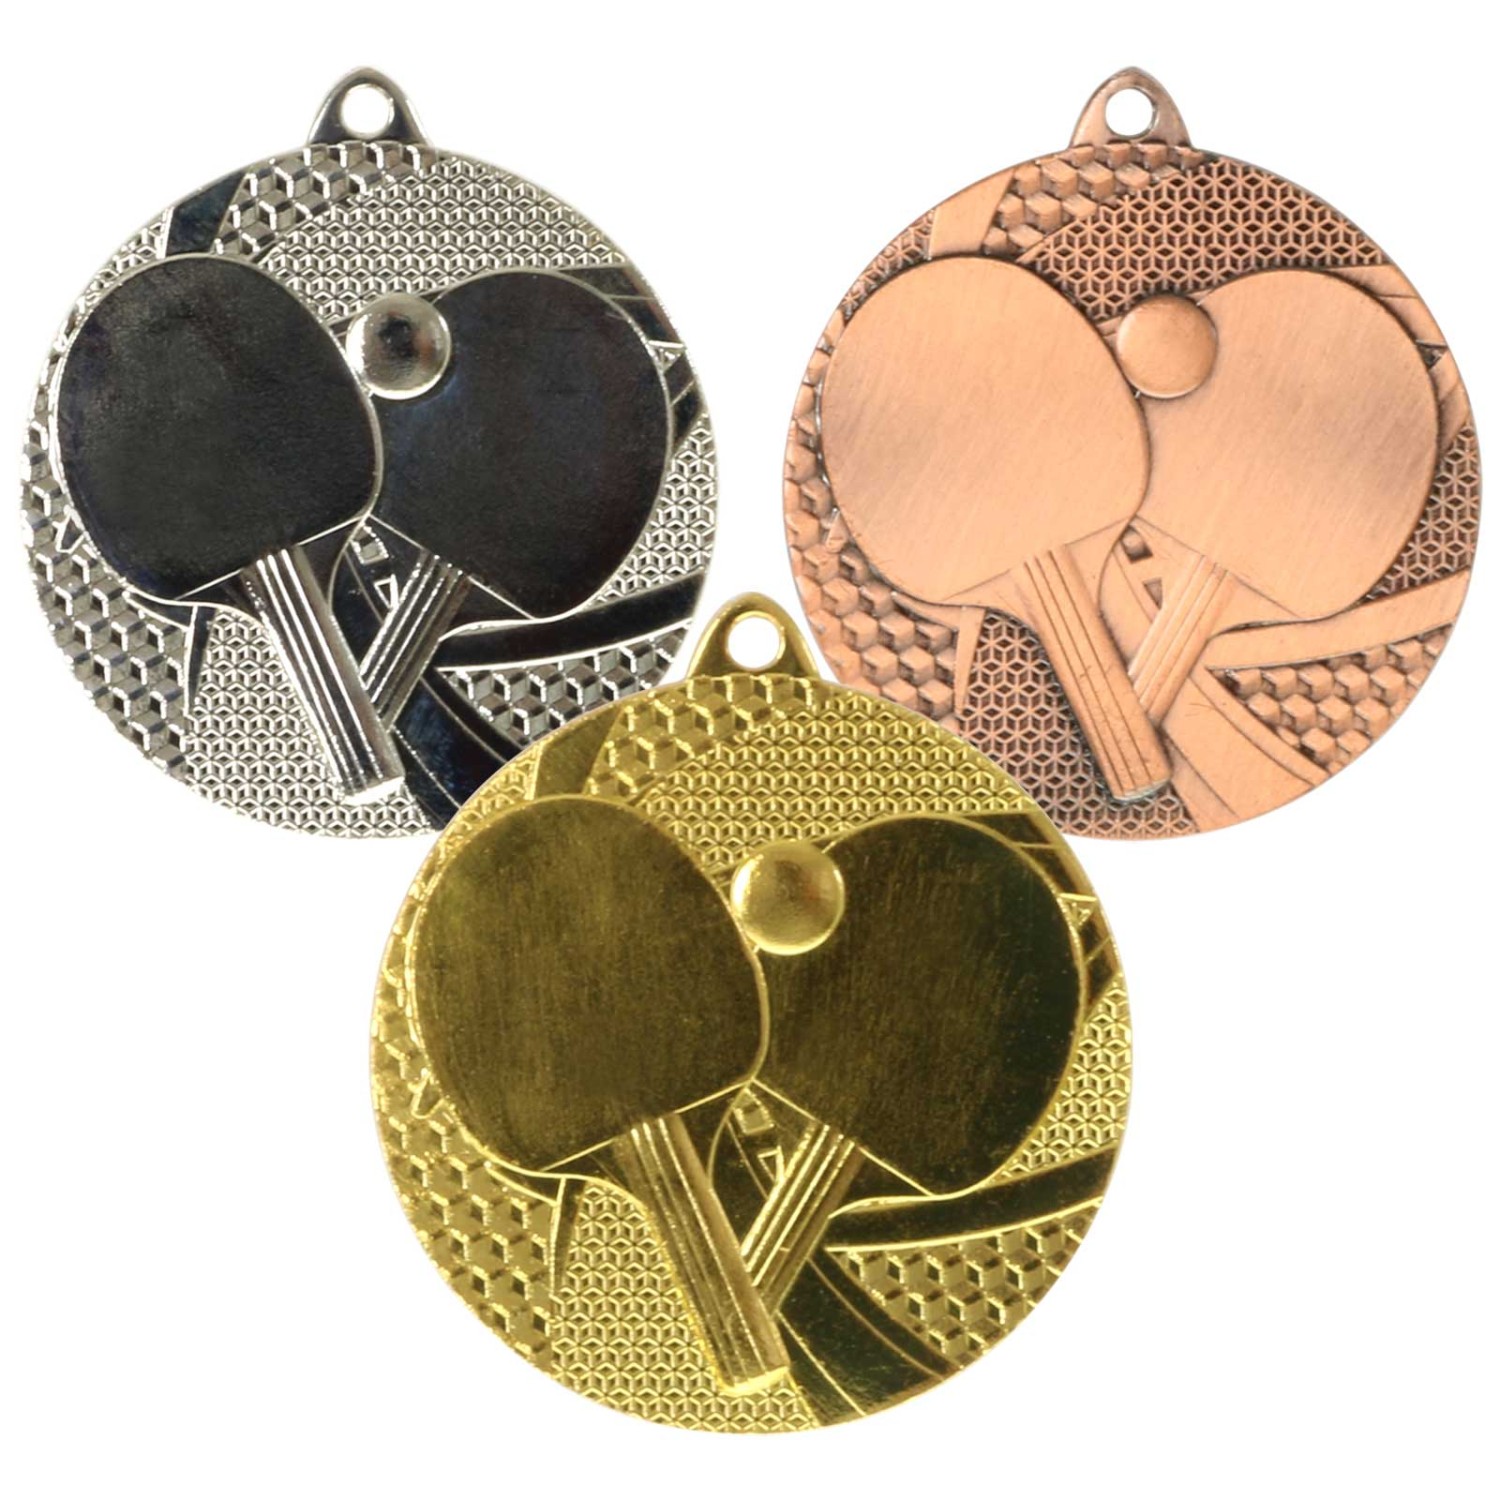 1. Foto Medaille Tischtennis Tischtennis-Medaillen rund gold silber bronze (Sorte: bronze)